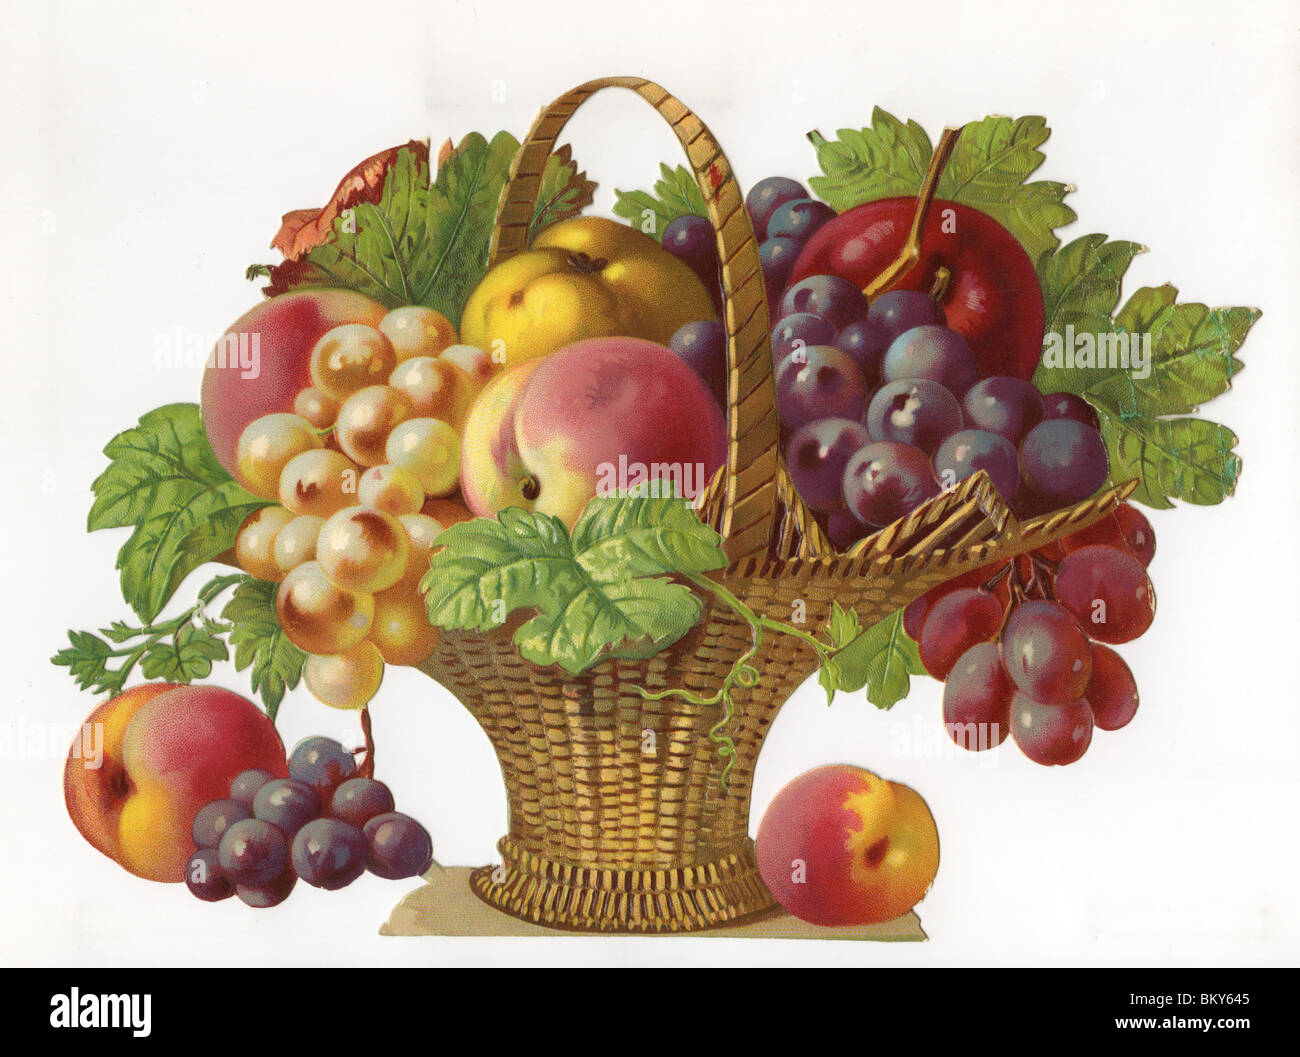 Obstkorb - Auswahl an Früchten in einem Weidenkorb Stockfoto